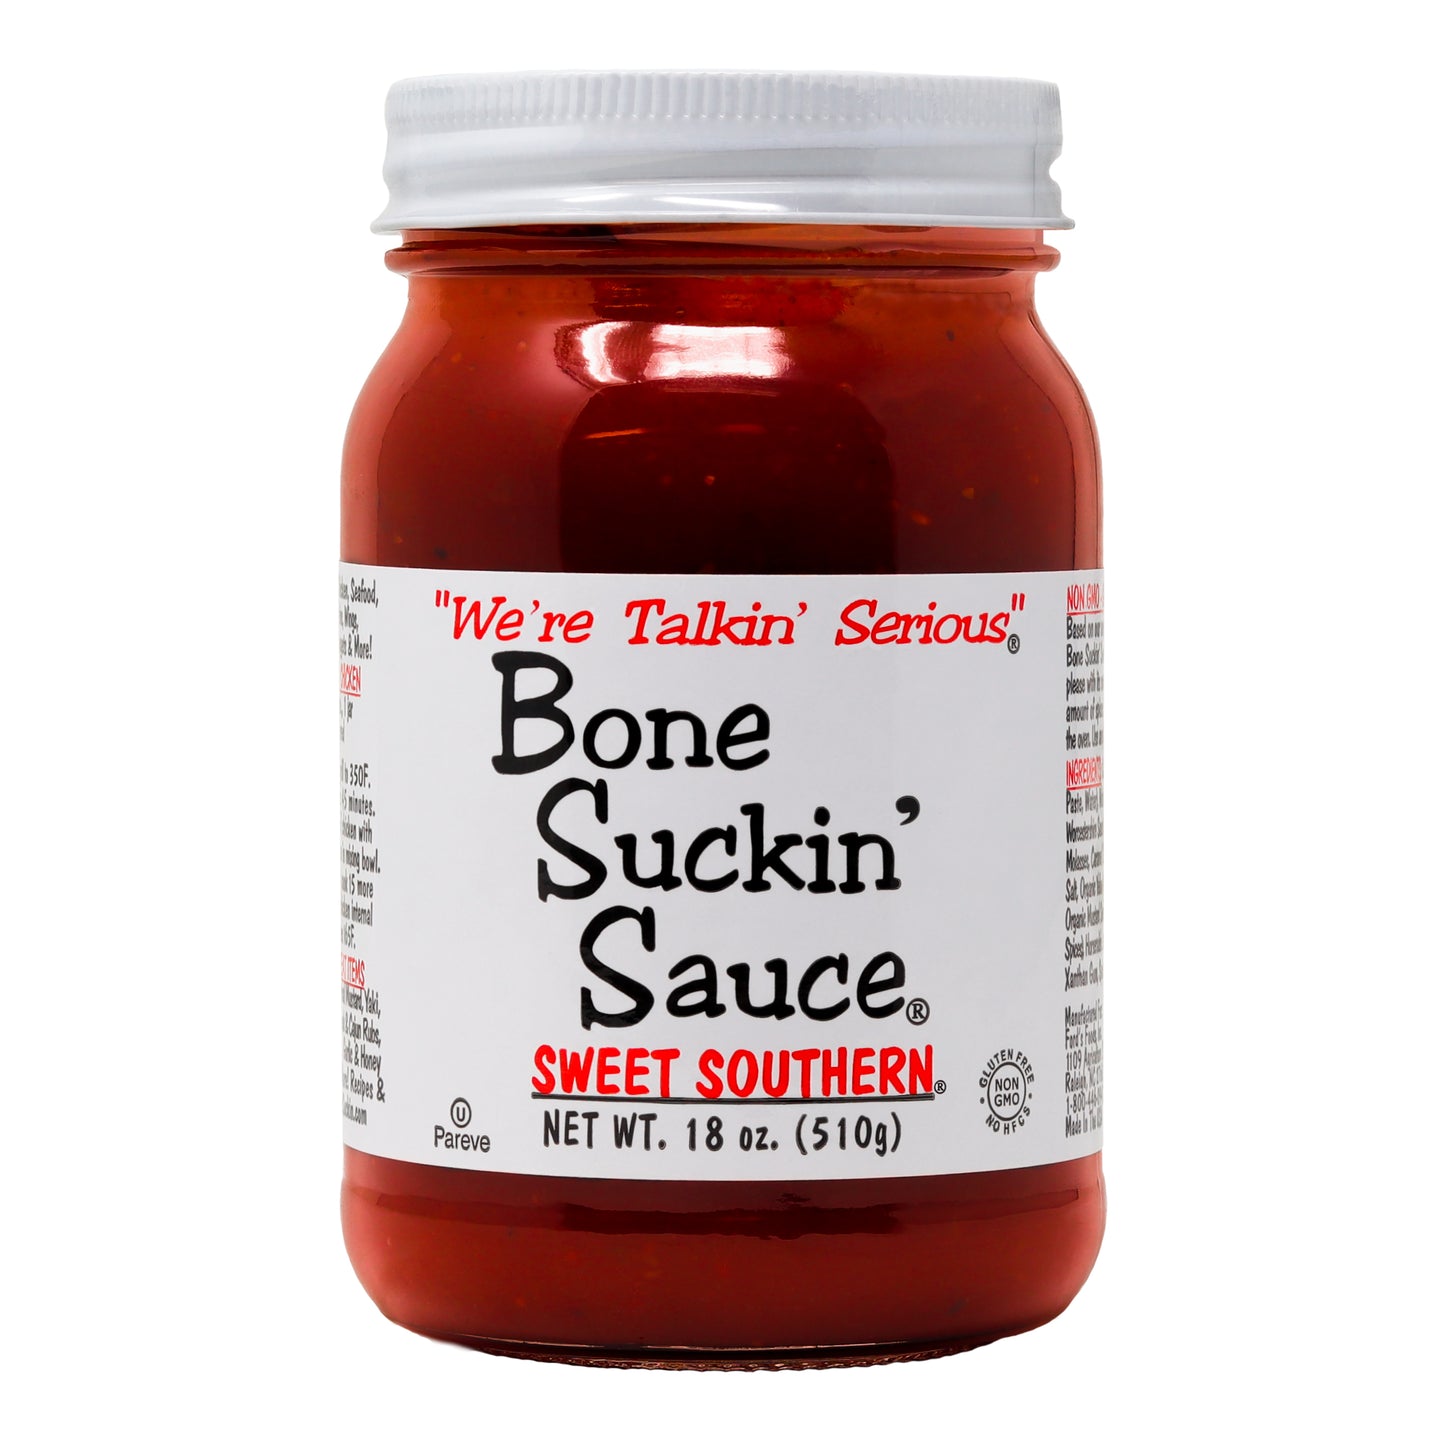 Bone Suckin' Sauce Sweet Southern, 18 oz. jar